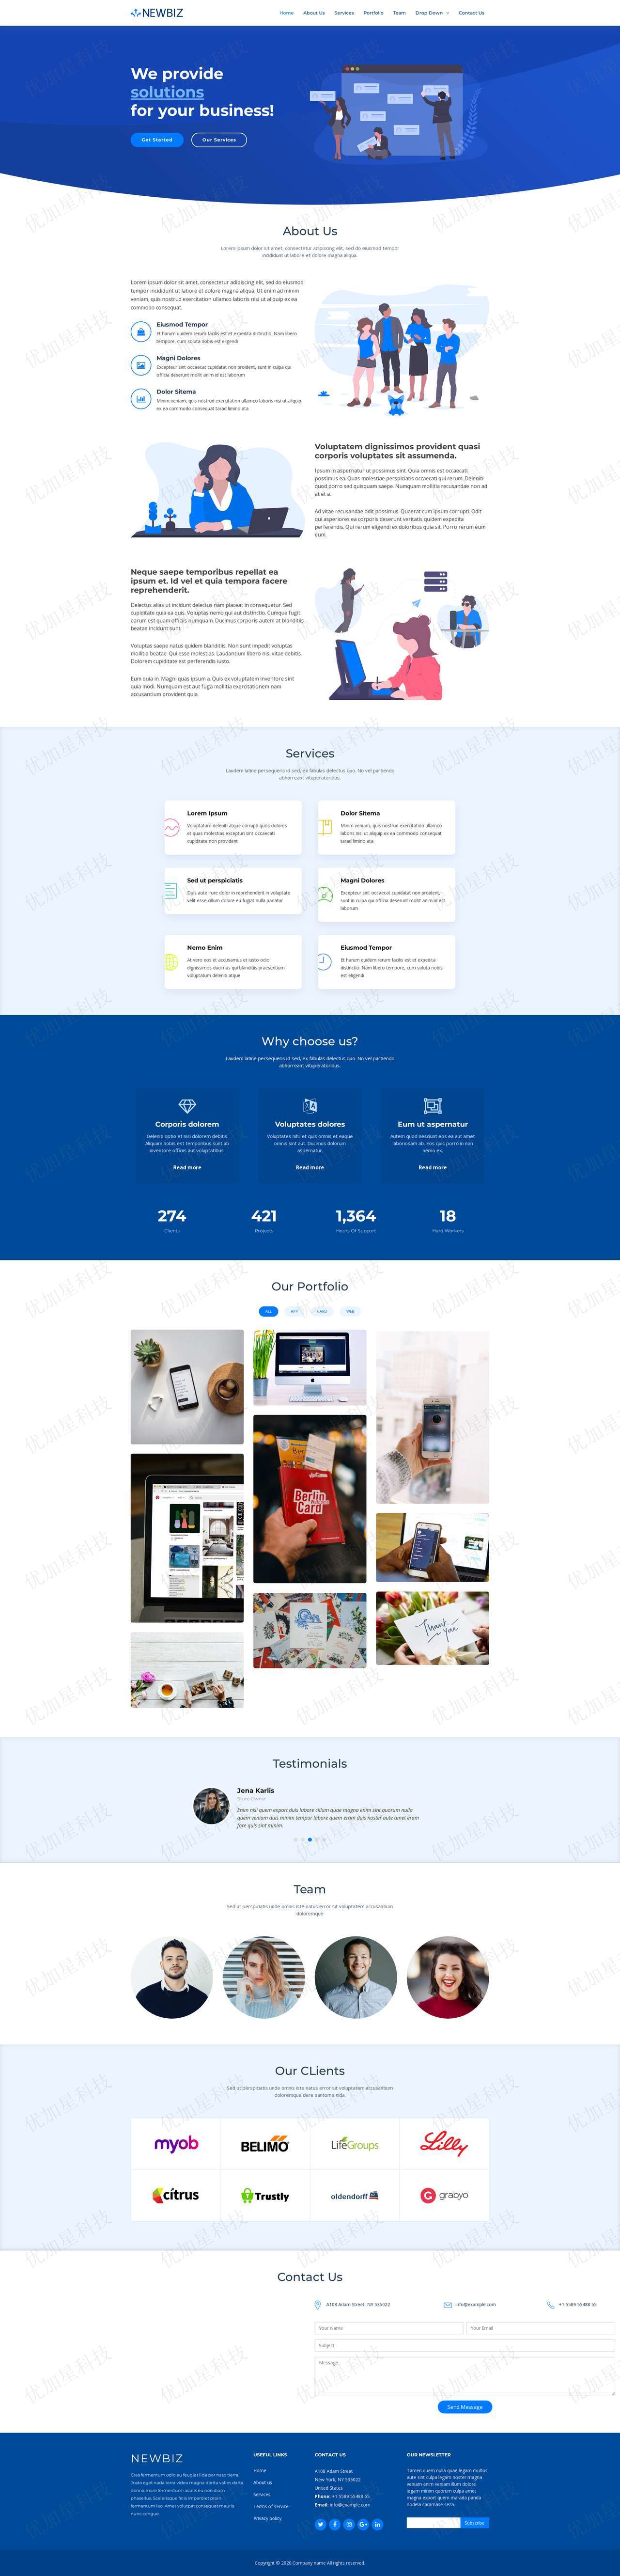 蓝色插画风格商务营销公司单页网站模板_优加星网络科技